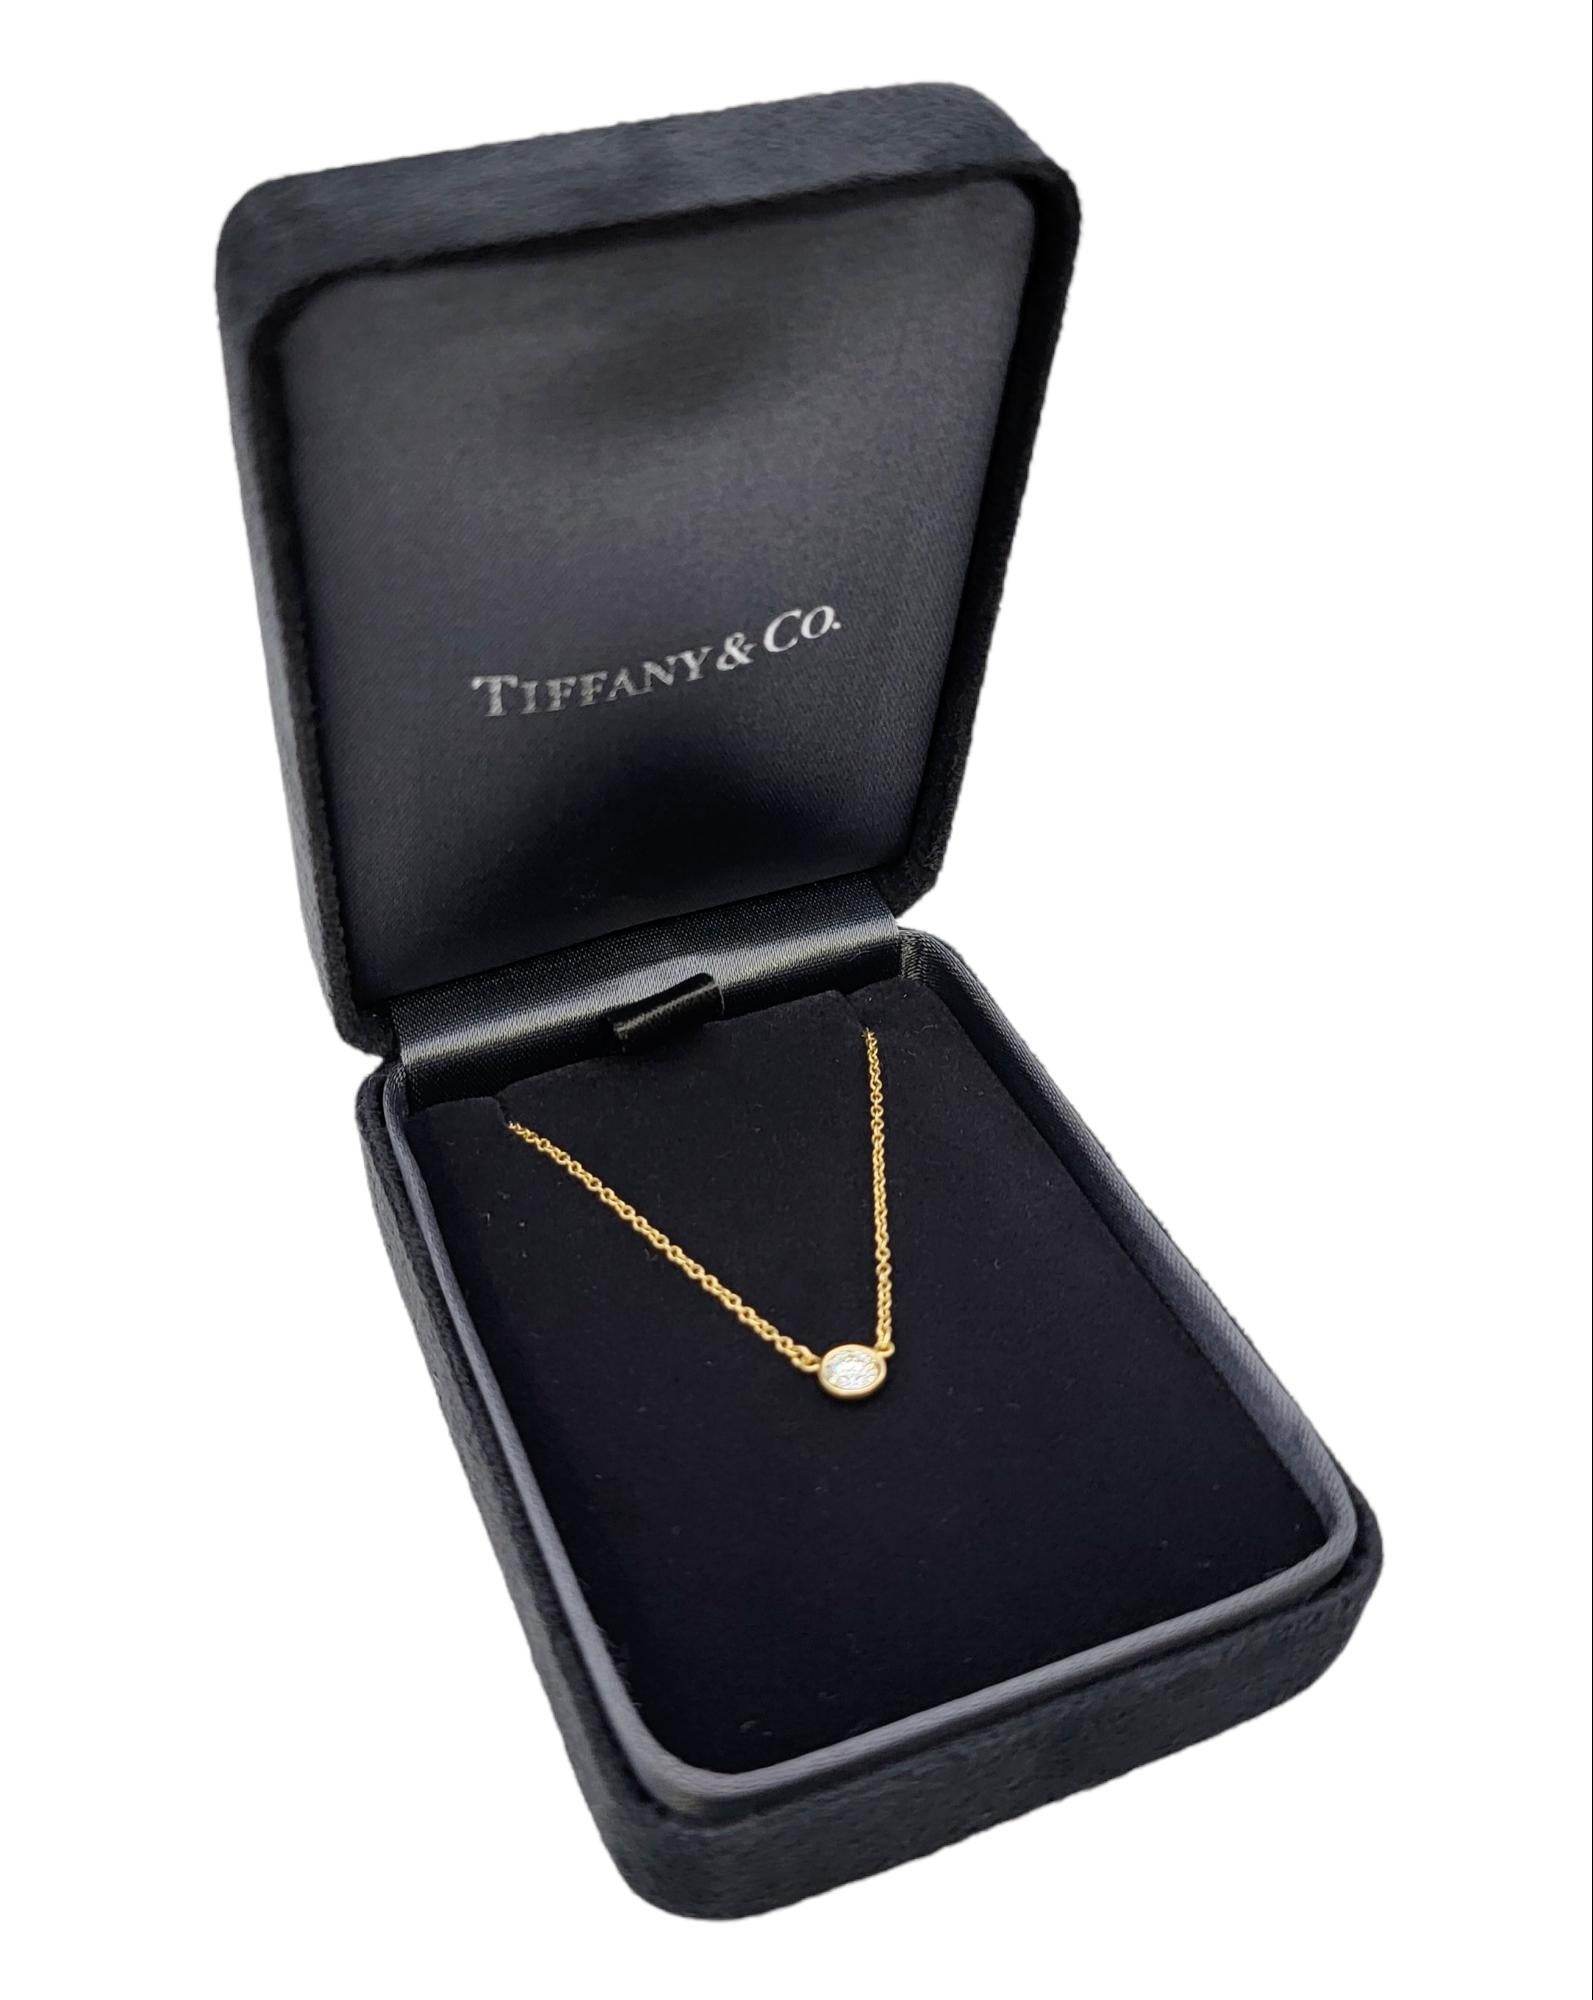 Tiffany & Co. Elsa Peretti Diamonds by the Yard Solitaire Pendant Necklace F/VS1 6